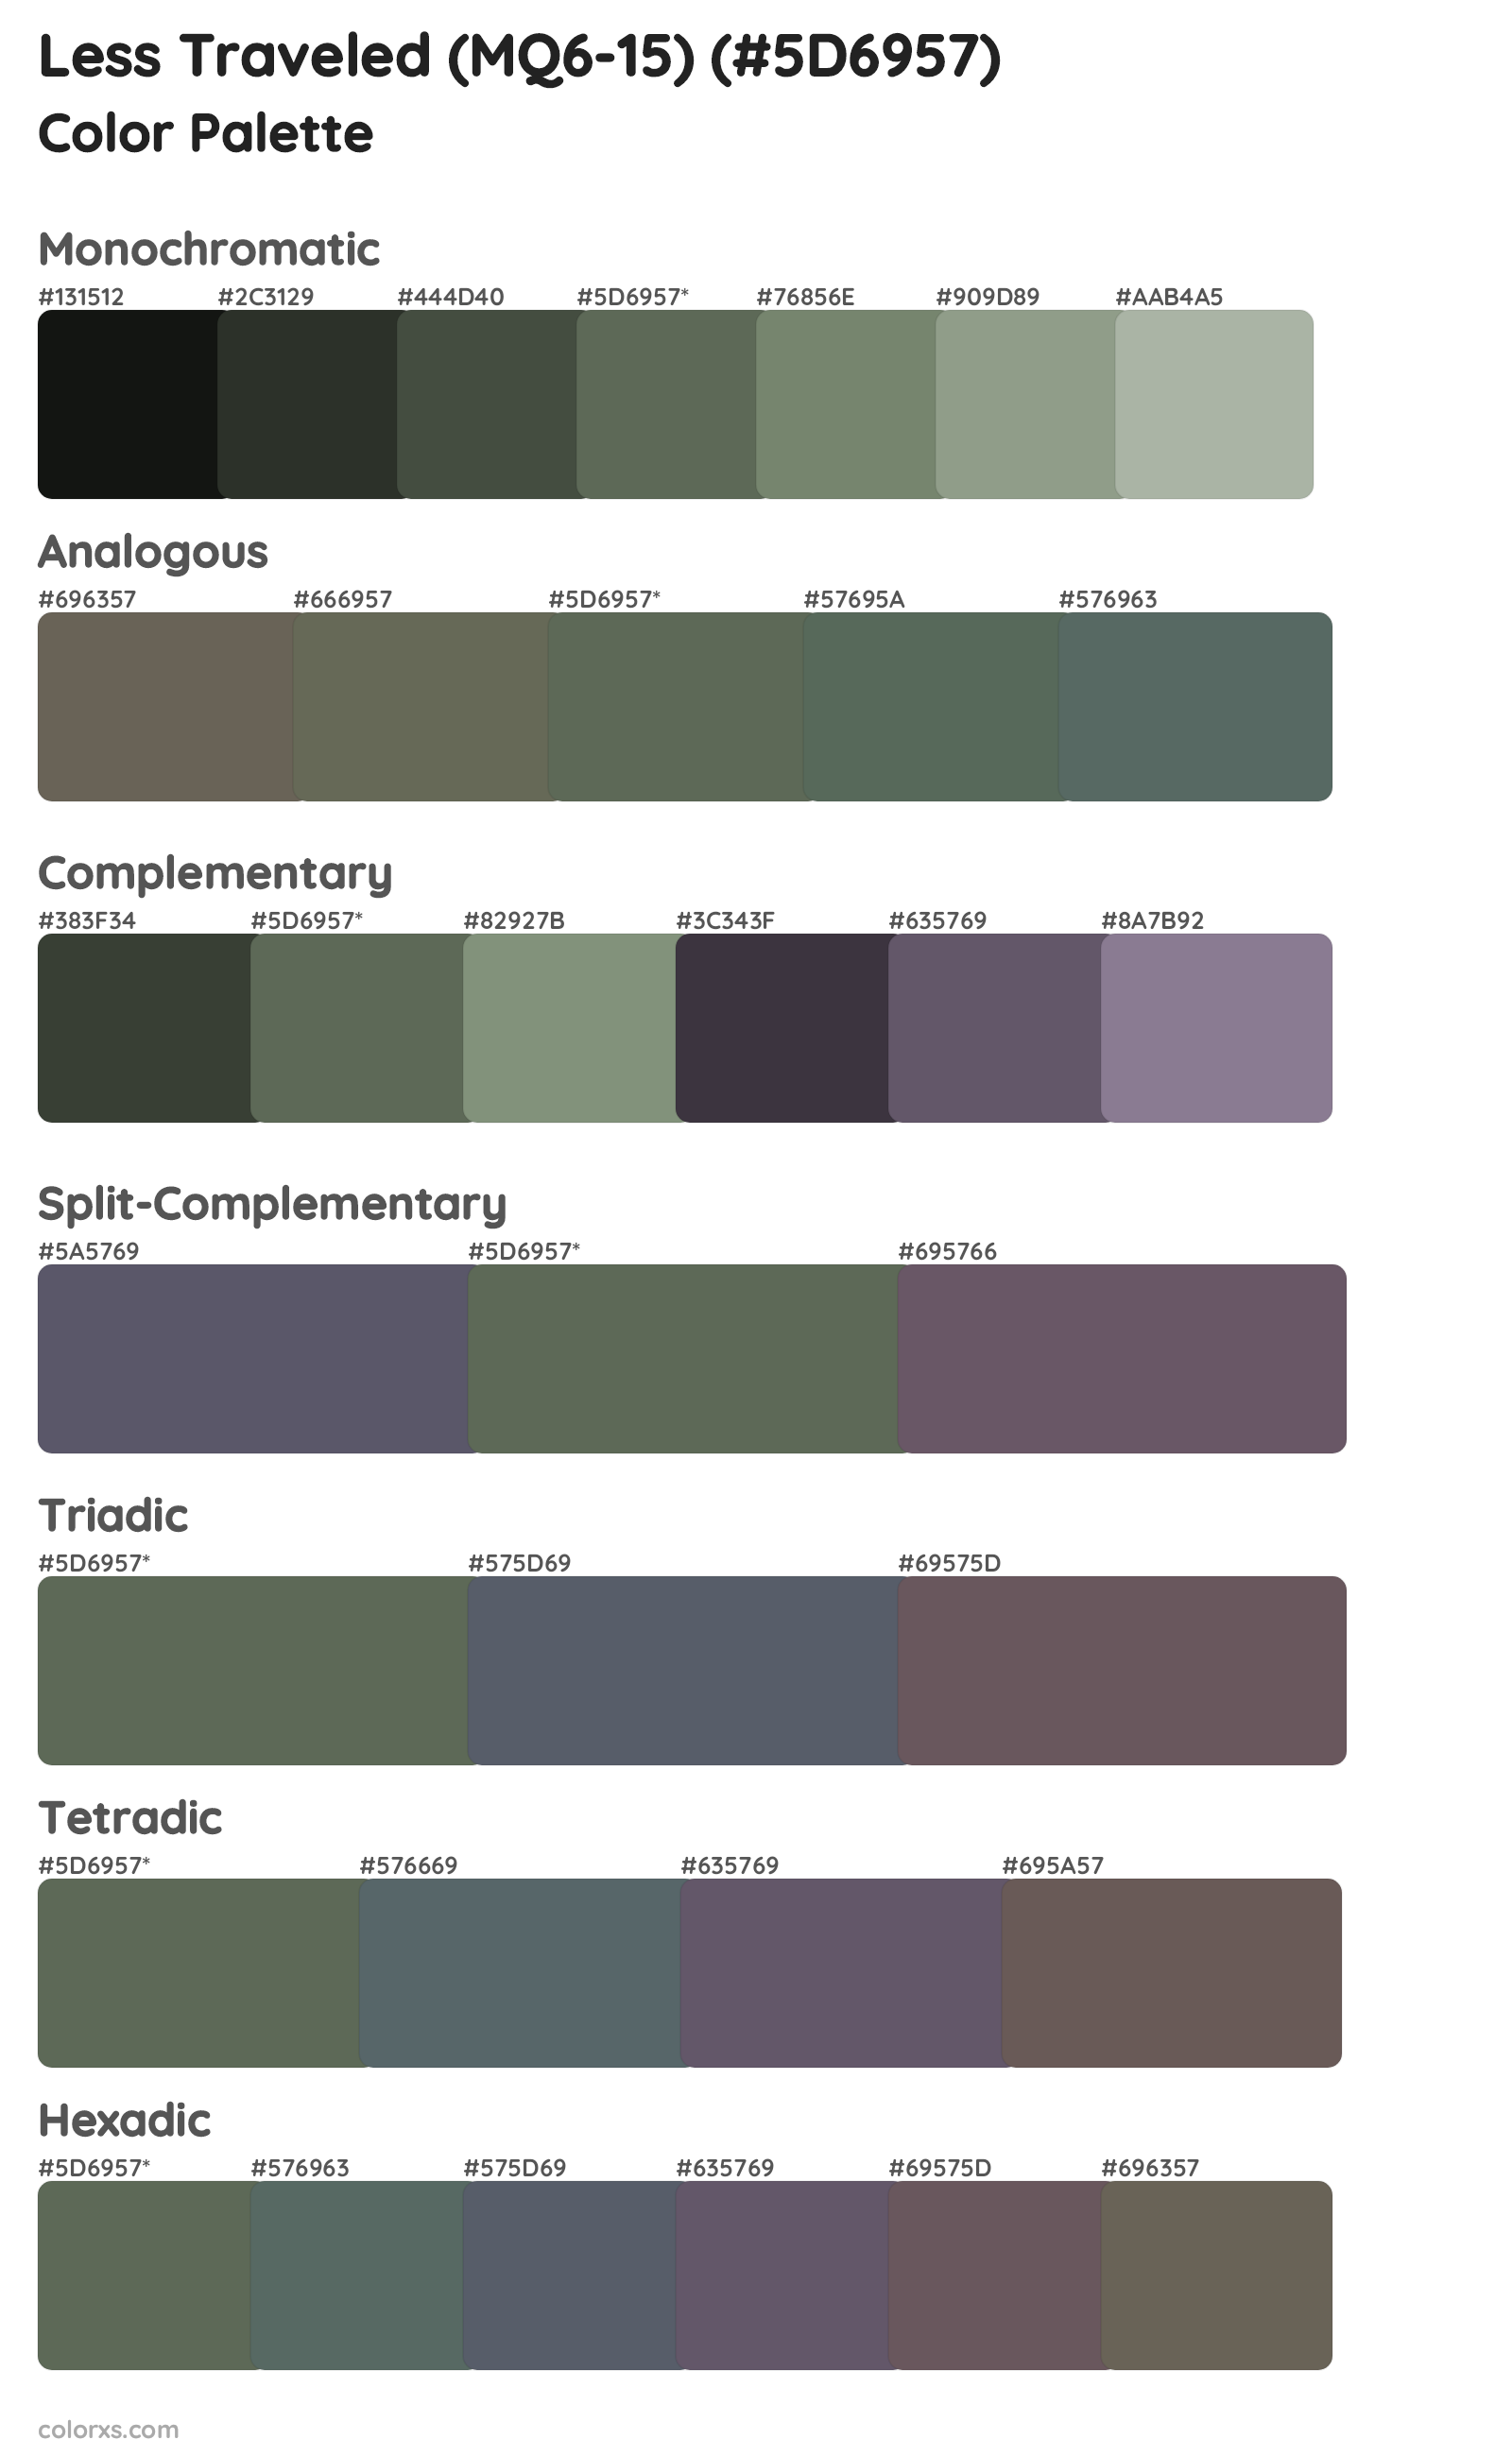 Less Traveled (MQ6-15) Color Scheme Palettes